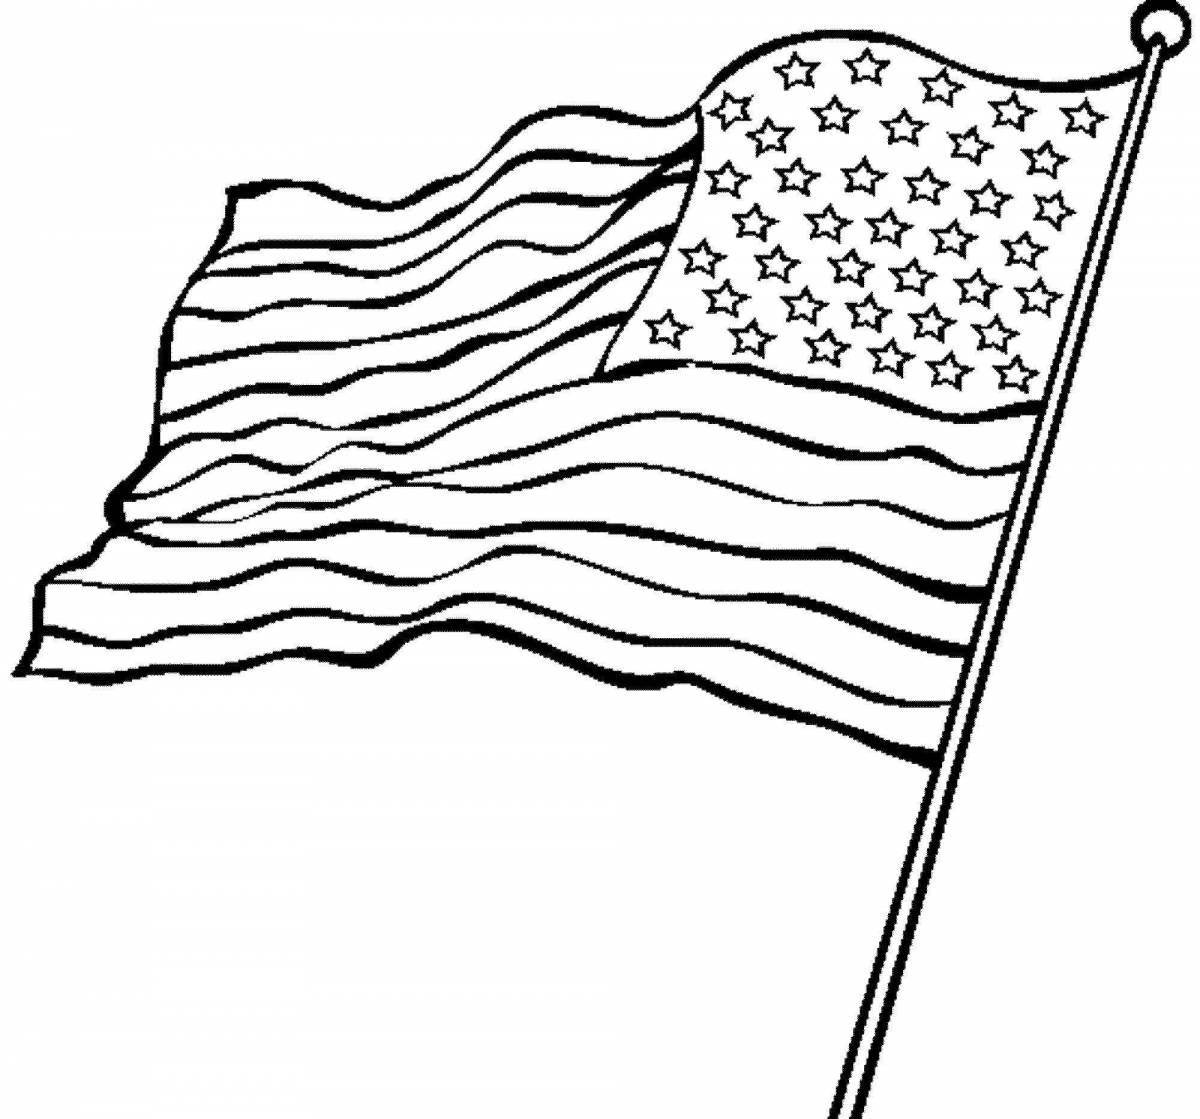 Красочно детализированная страница раскраски с американским флагом